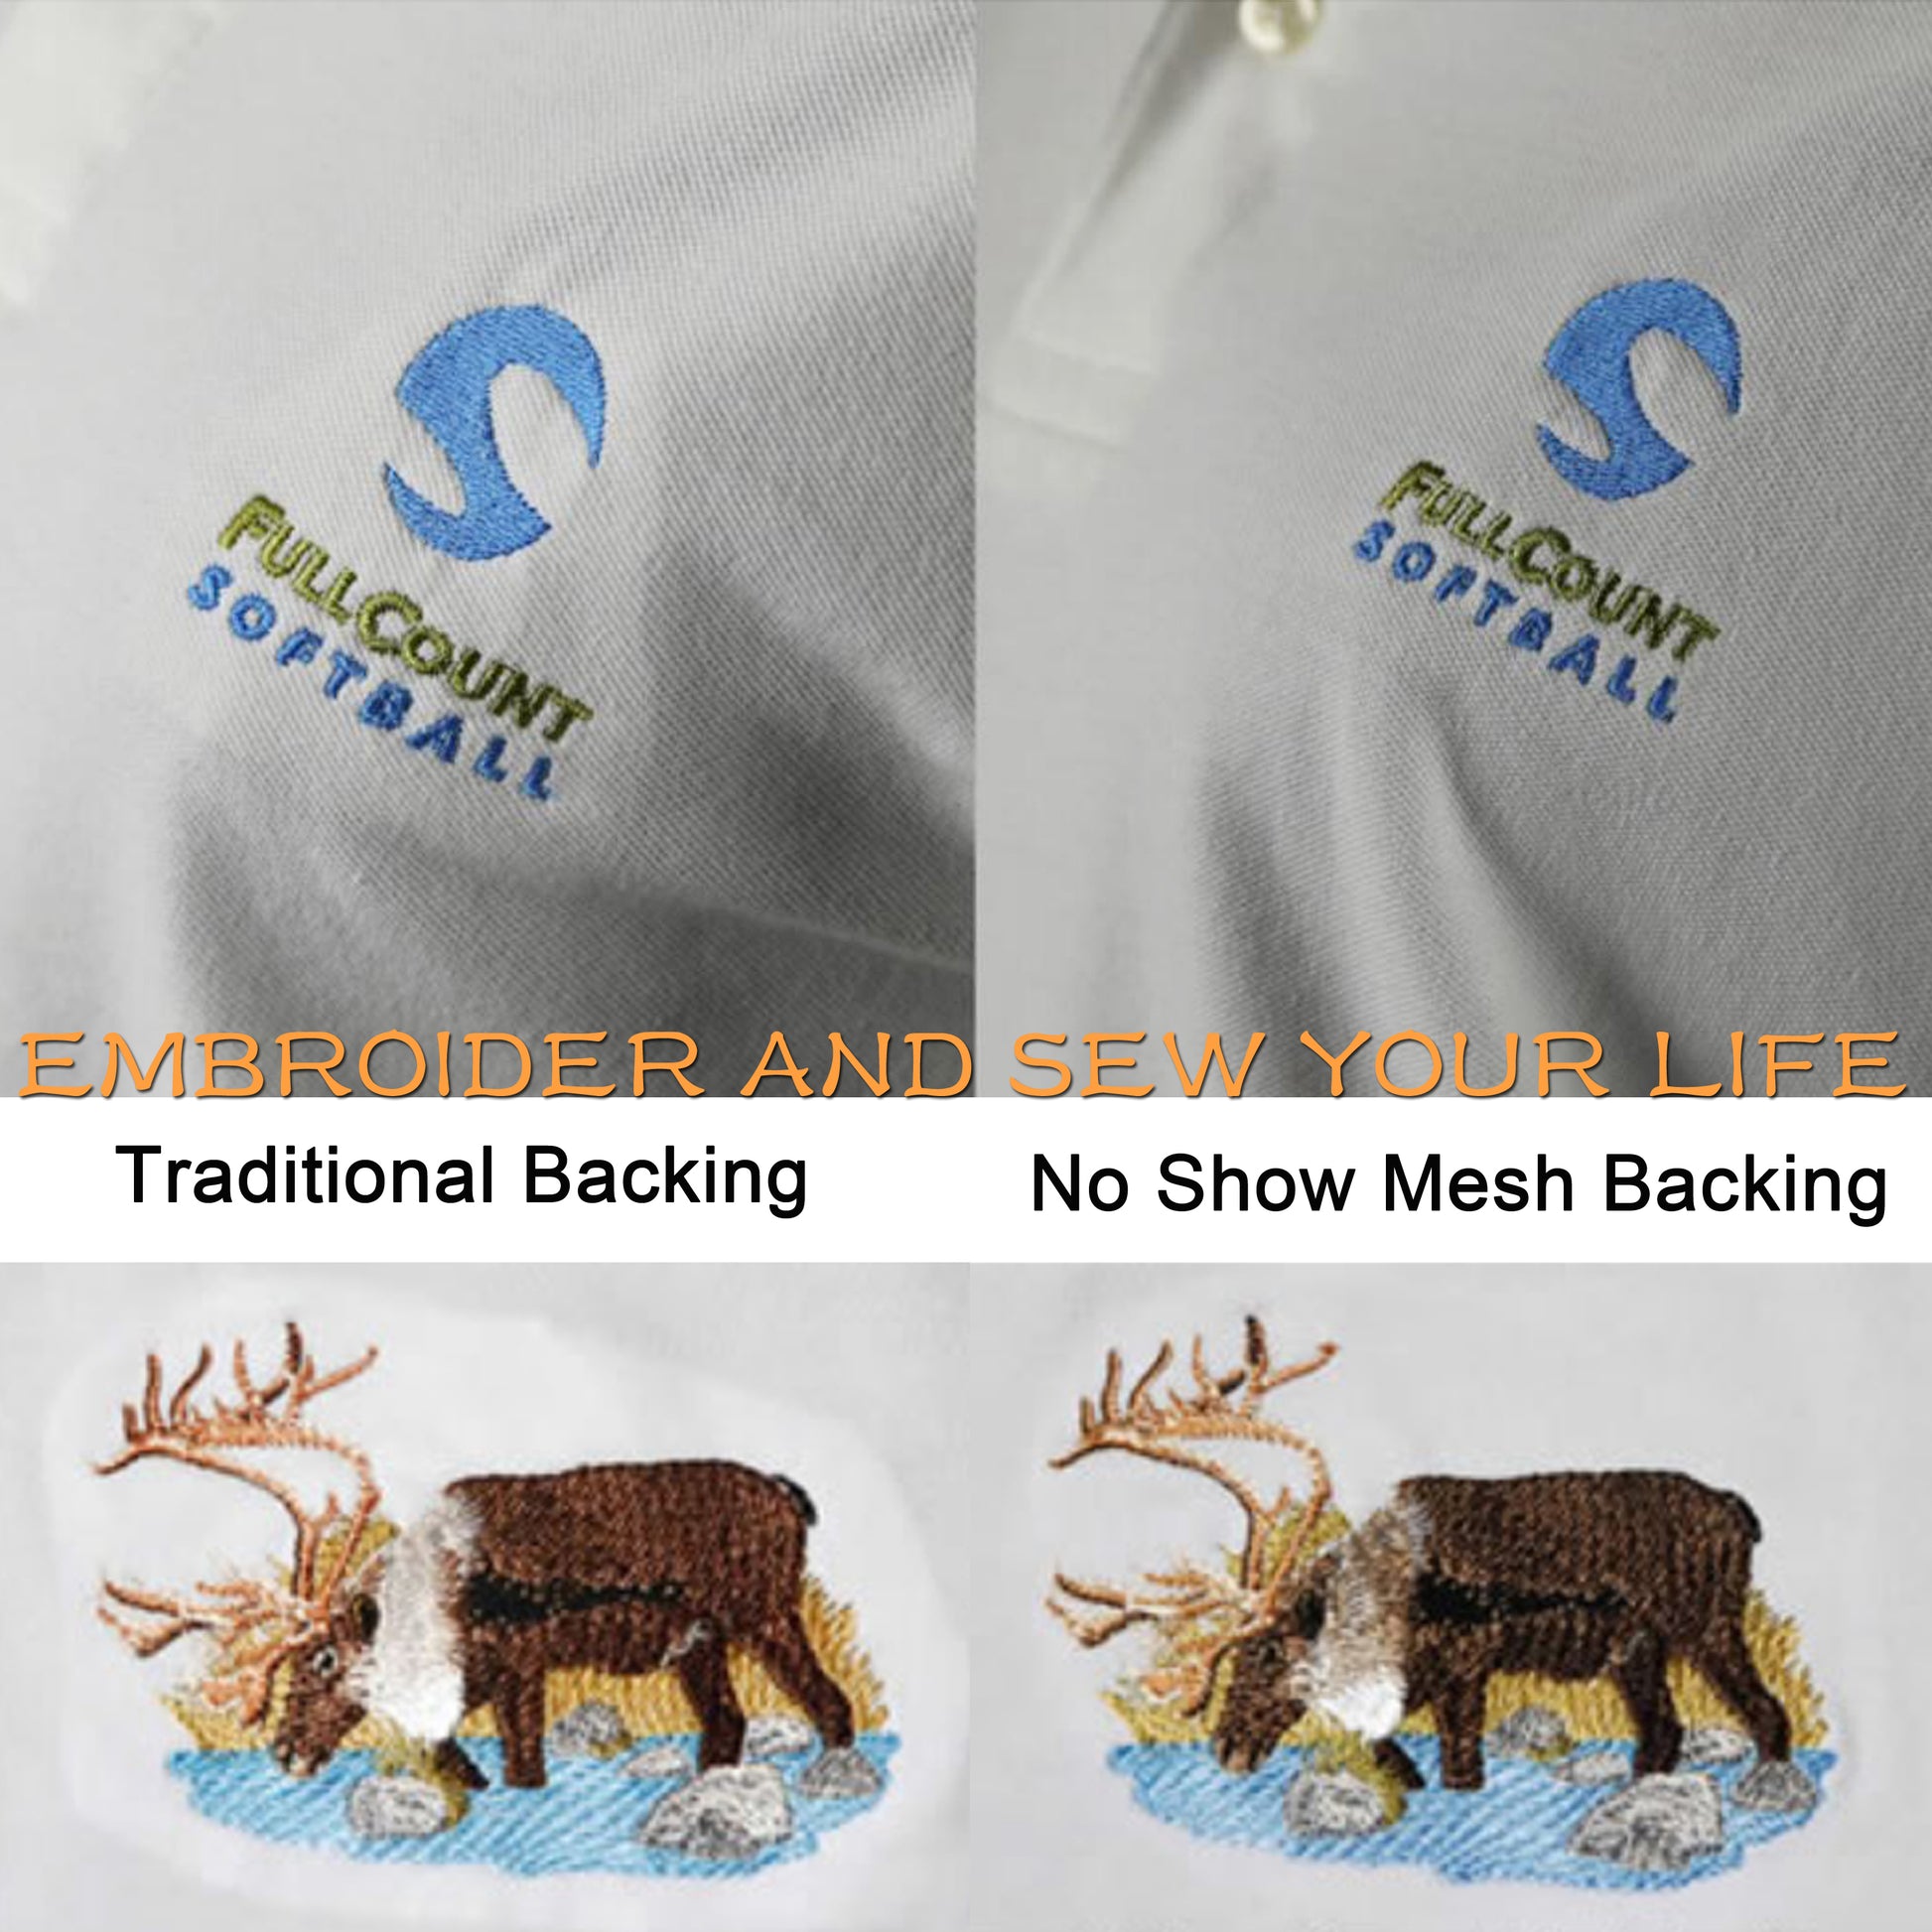 New brothread Black Tear Away Machine Embroidery Stabilizer Backing 12 x  25 Yd roll - Medium Weight 1.8 oz